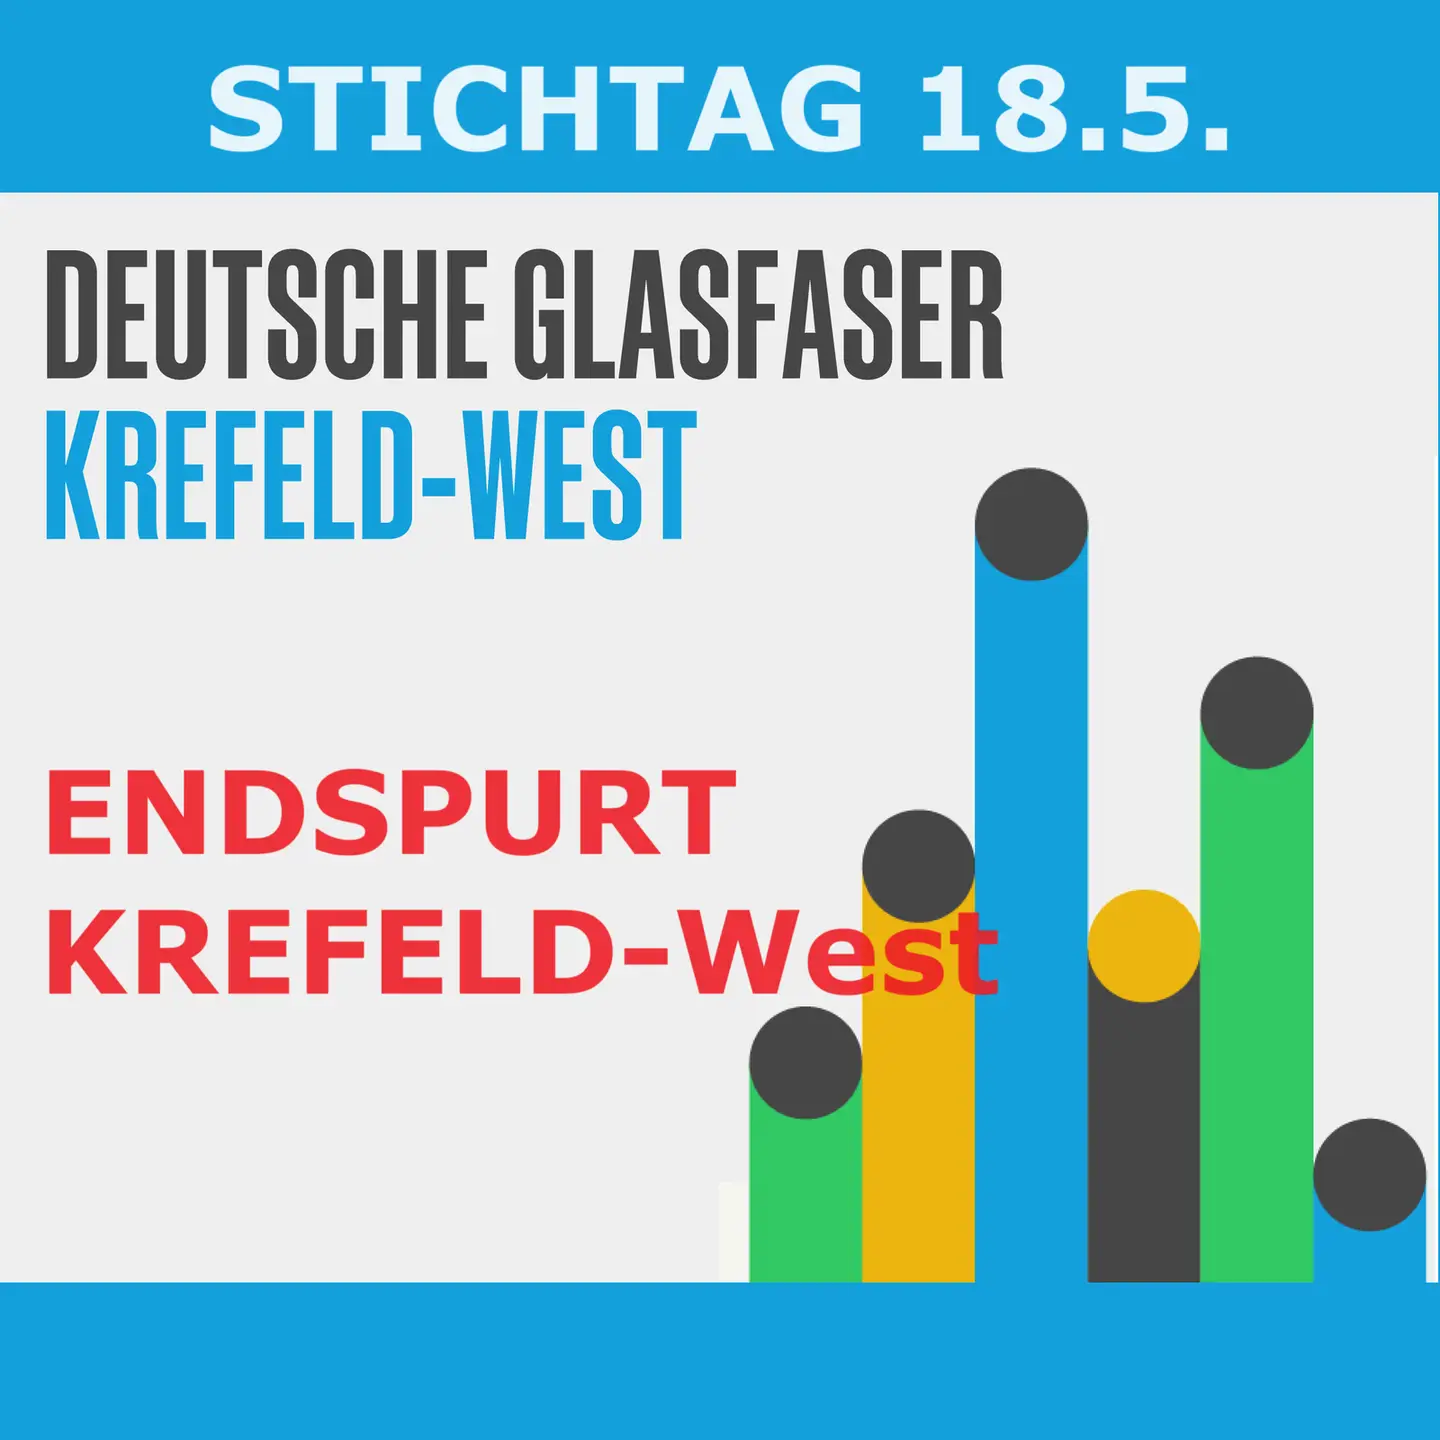 Bild blau/weiß mit folgendem Text und einer Strich-Punkt-Grafik: Stichrtag 18.5. - DEUTSCHE GLASFASER Krefeld-West - ENDSPURT KREFELD-WEST